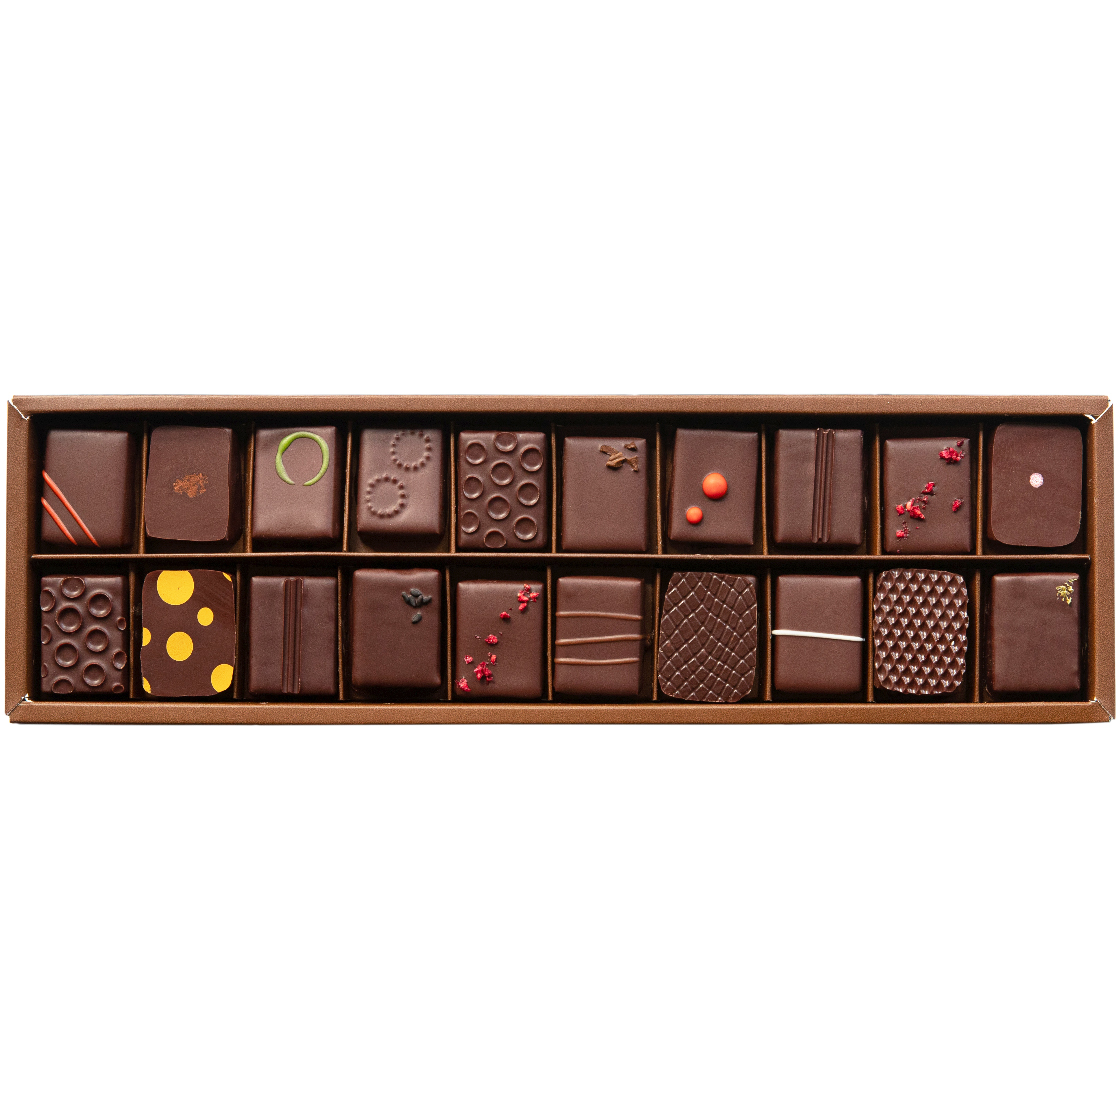 最適な価格 Bonbon Au Chocolatクレープメーカー edmontonworkshops.com